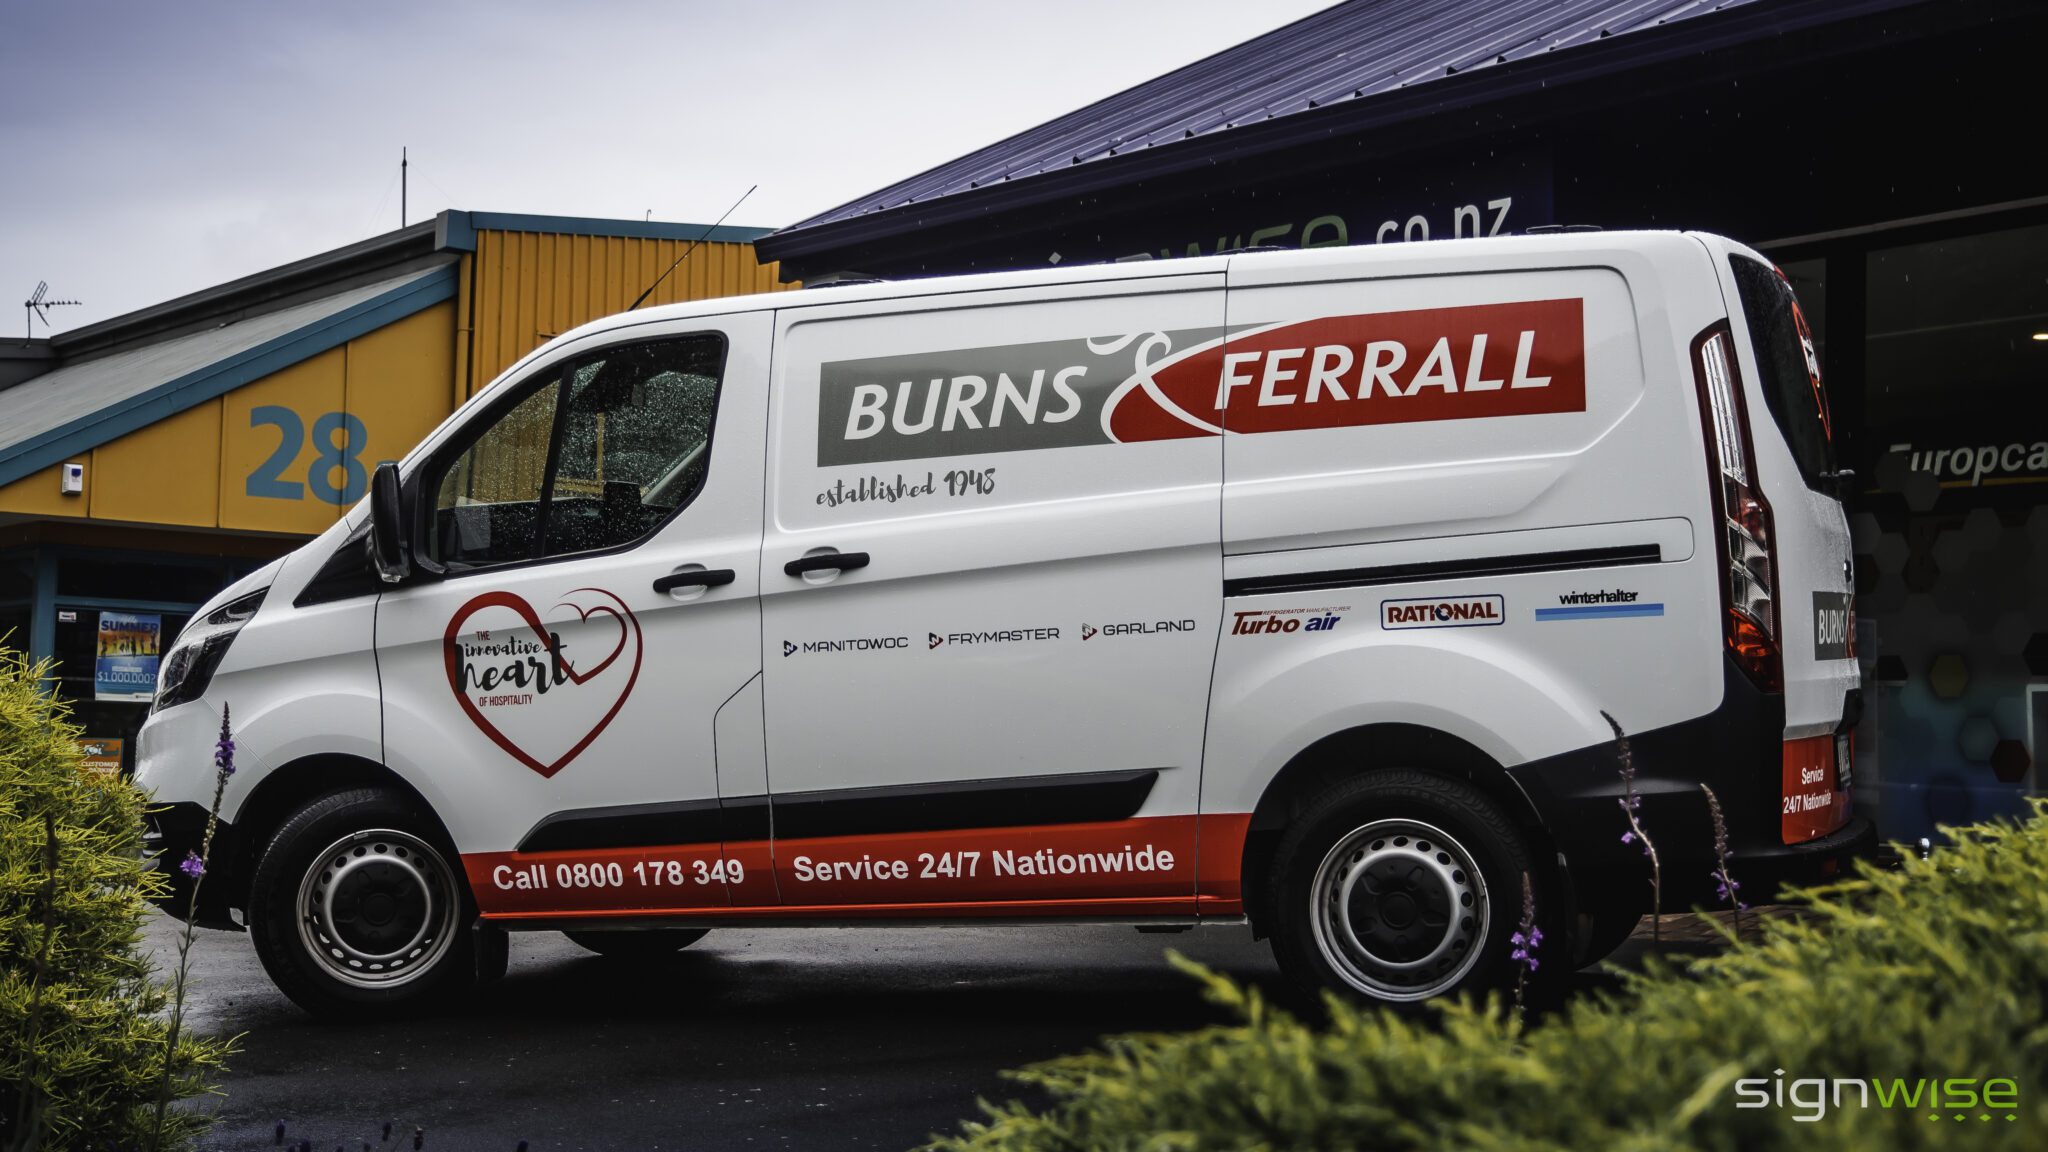 Burns and Ferrall Van